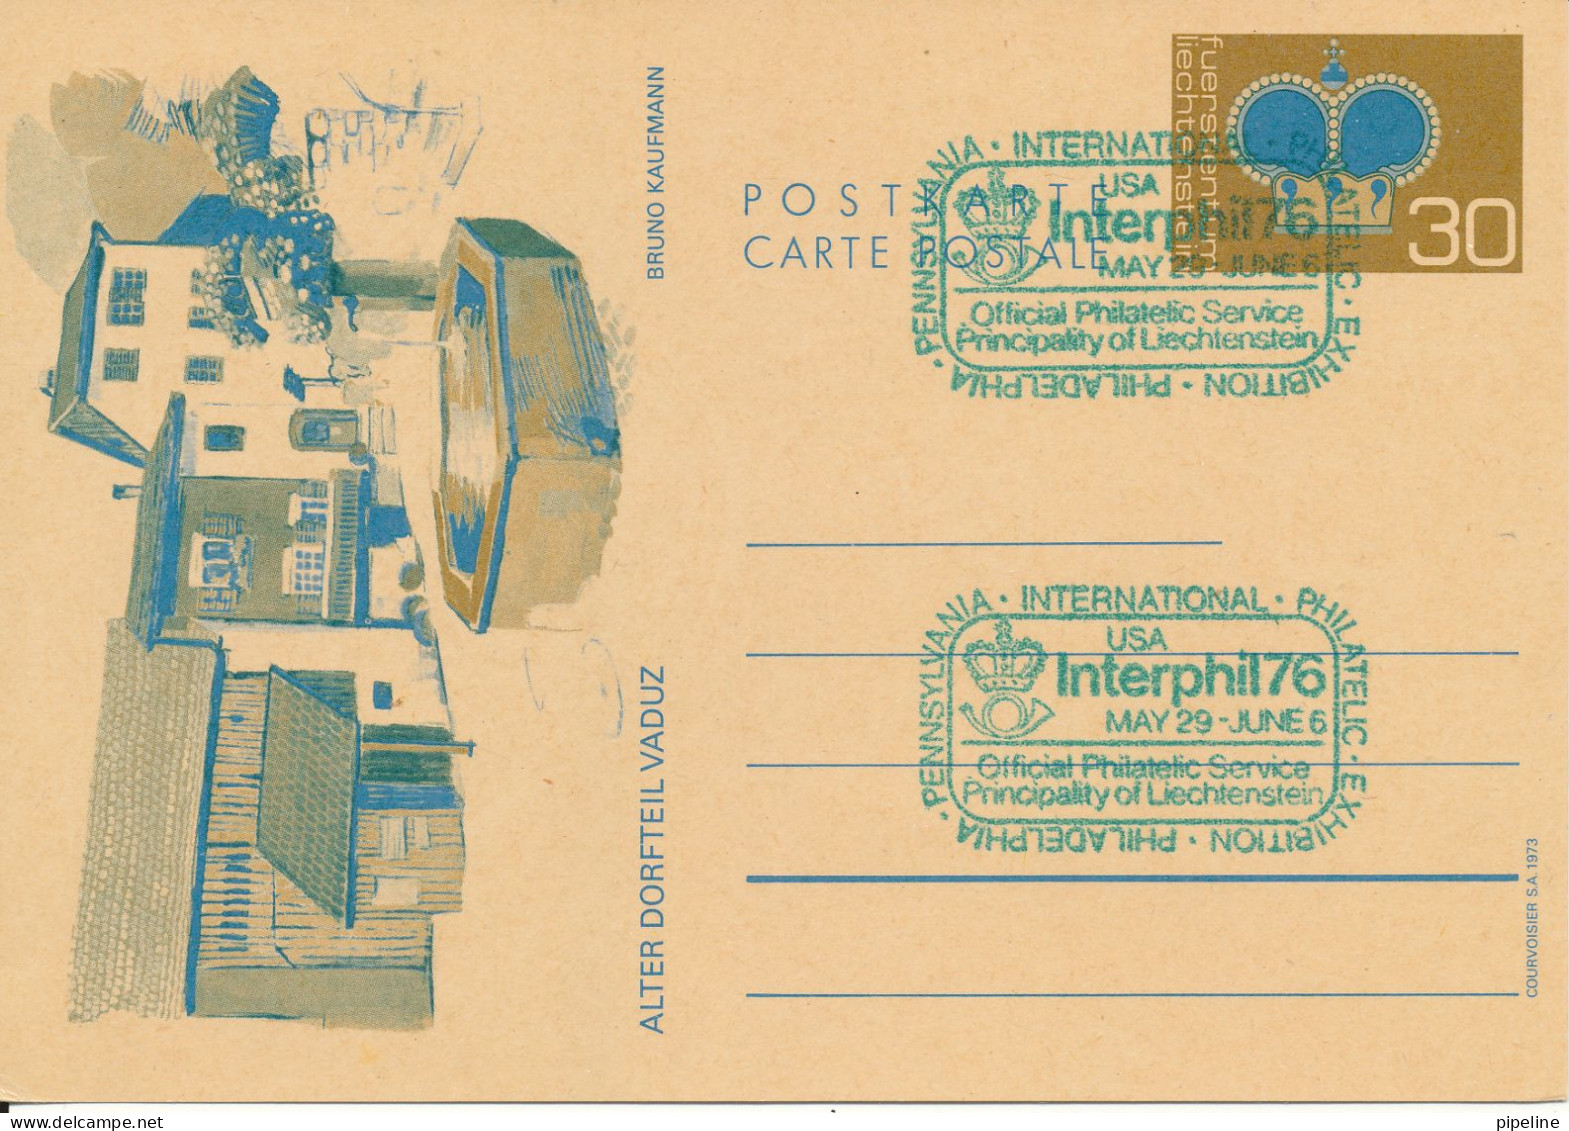 Liechtenstein Postal Stationery Card Interphil 76 USA 29-5 - 6-6-1976 - Entiers Postaux